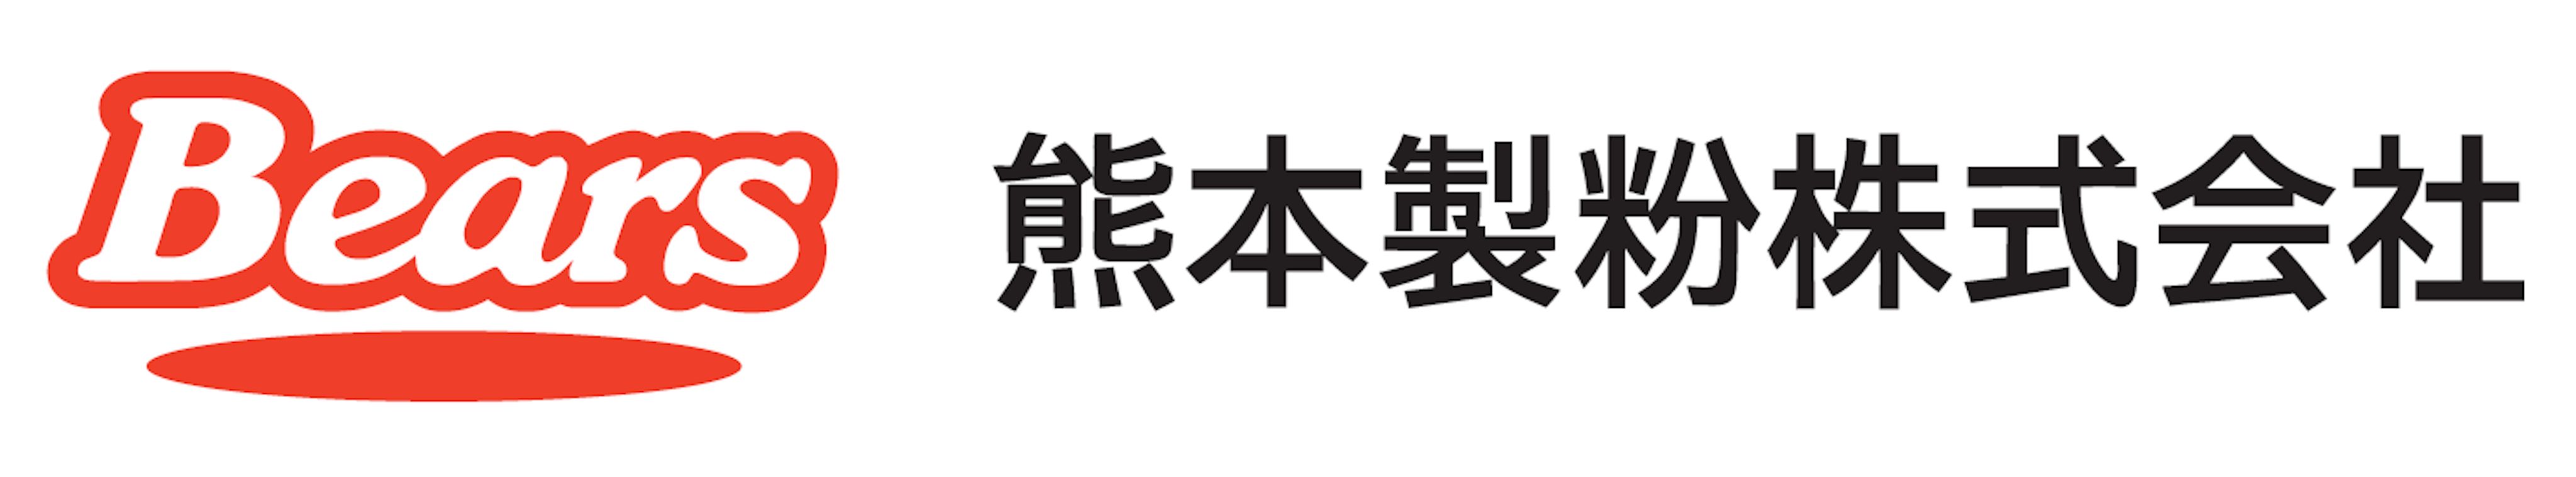 熊本製粉株式会社